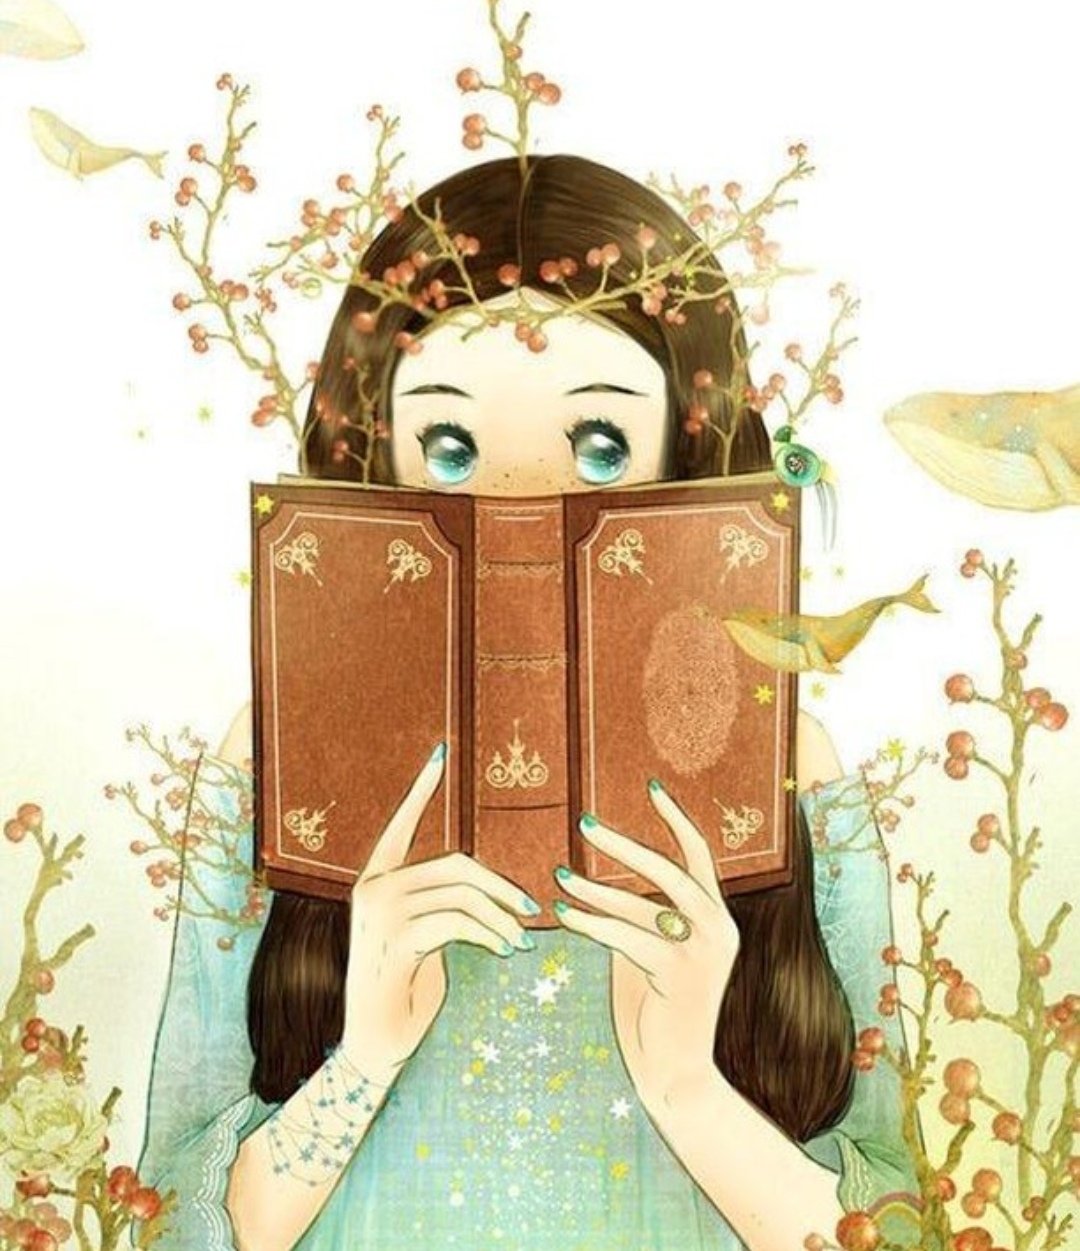 Девочка с книжкой